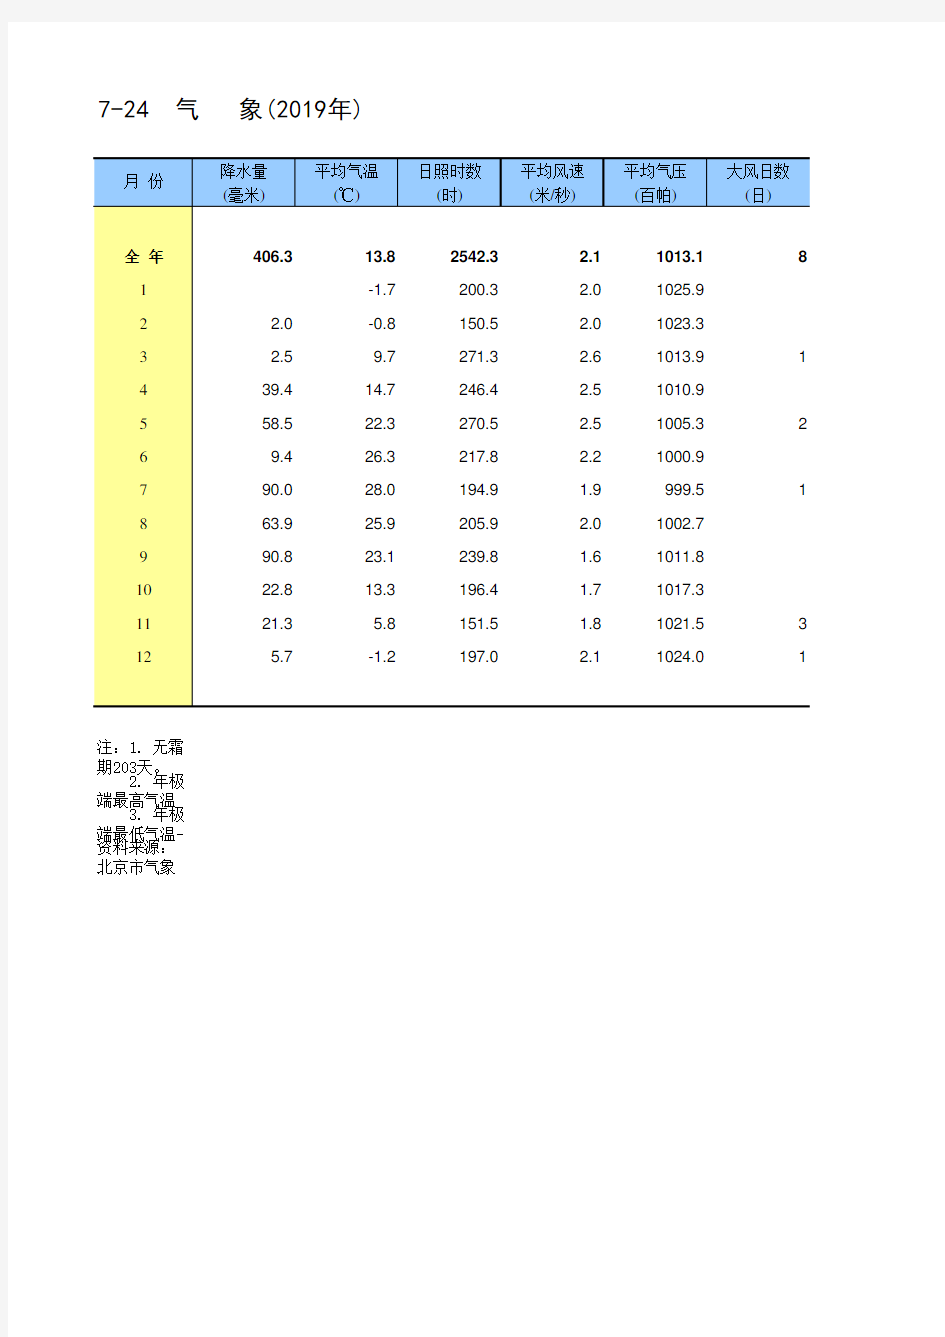 北京统计年鉴2020各区社会经济发展指标：气象(2019年)